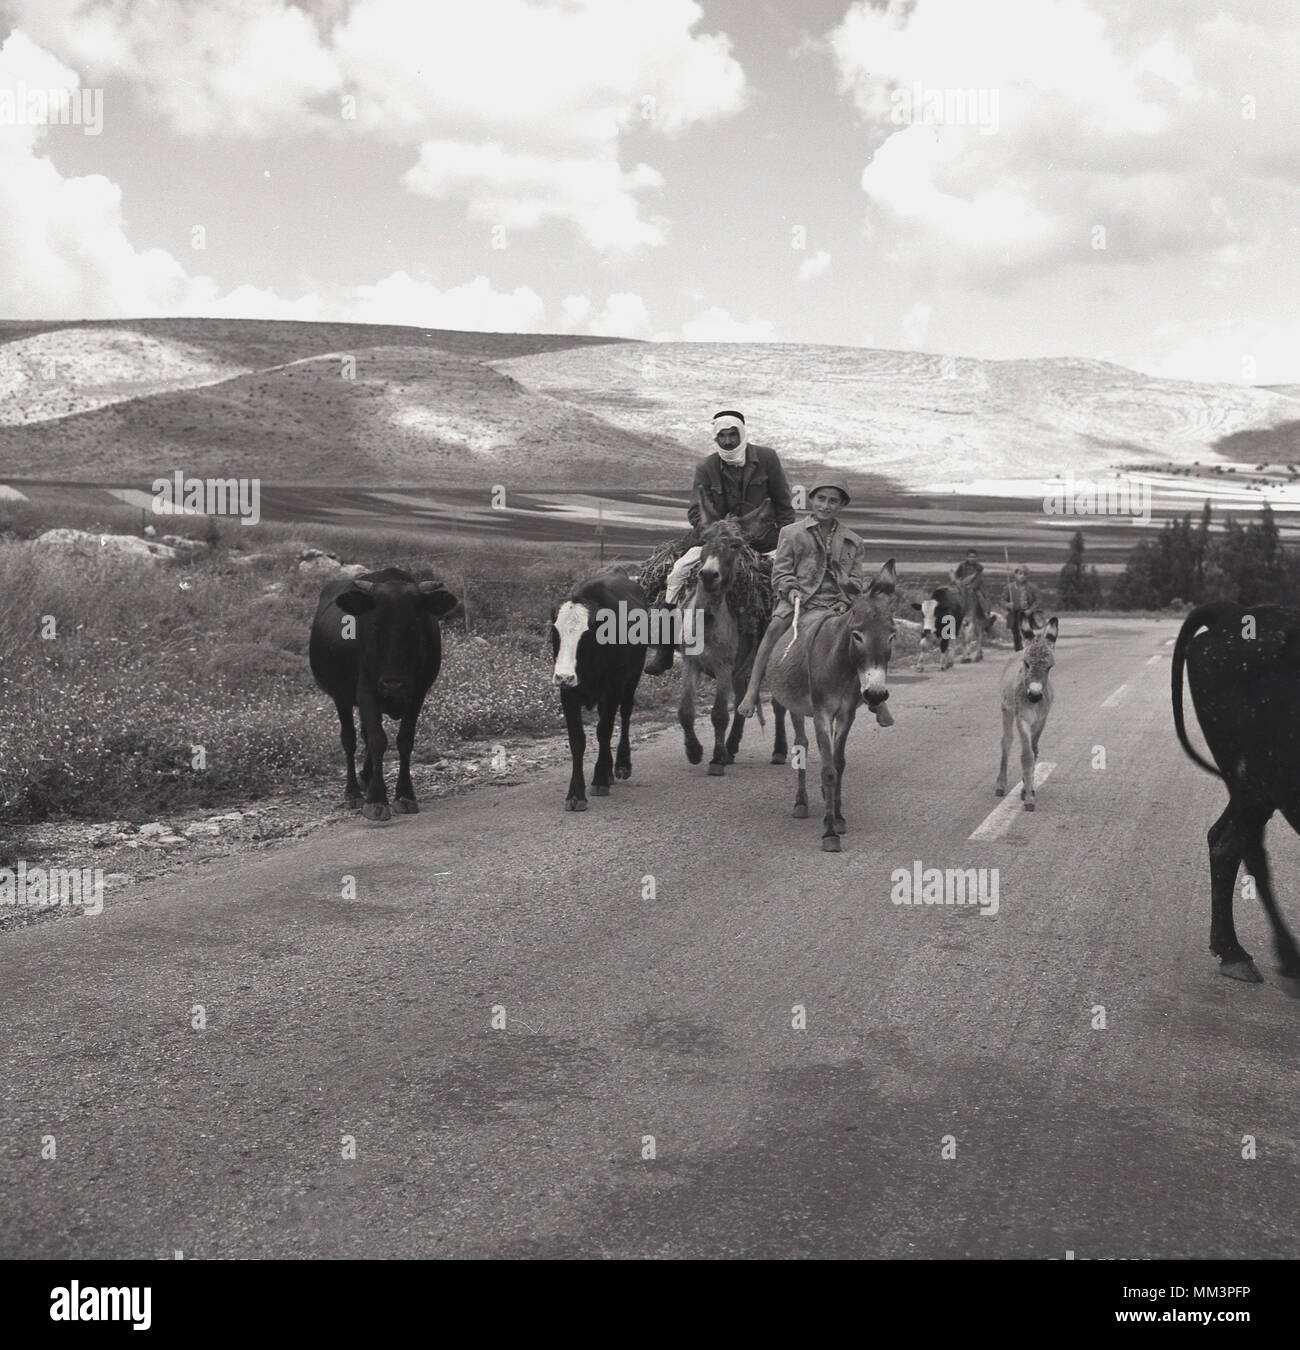 1955, storico, un beduino palestinese e il suo giovane figlio al di fuori su una strada nel deserto a cavallo di asini e con il loro bestiame al pascolo, Israele. Gli arabi palestinesi o più comunemente, beduini erano un popolo nomade impegnati in imbrancandosi di animali e di pascoli e di agricoltura, che vivevano nelle zone desertiche di ciò che è stato poi chiamato Palestina ma che dopo WW2, nel 1948 divenne territorio nella neonata dello stato ebraico di Israele. Foto Stock